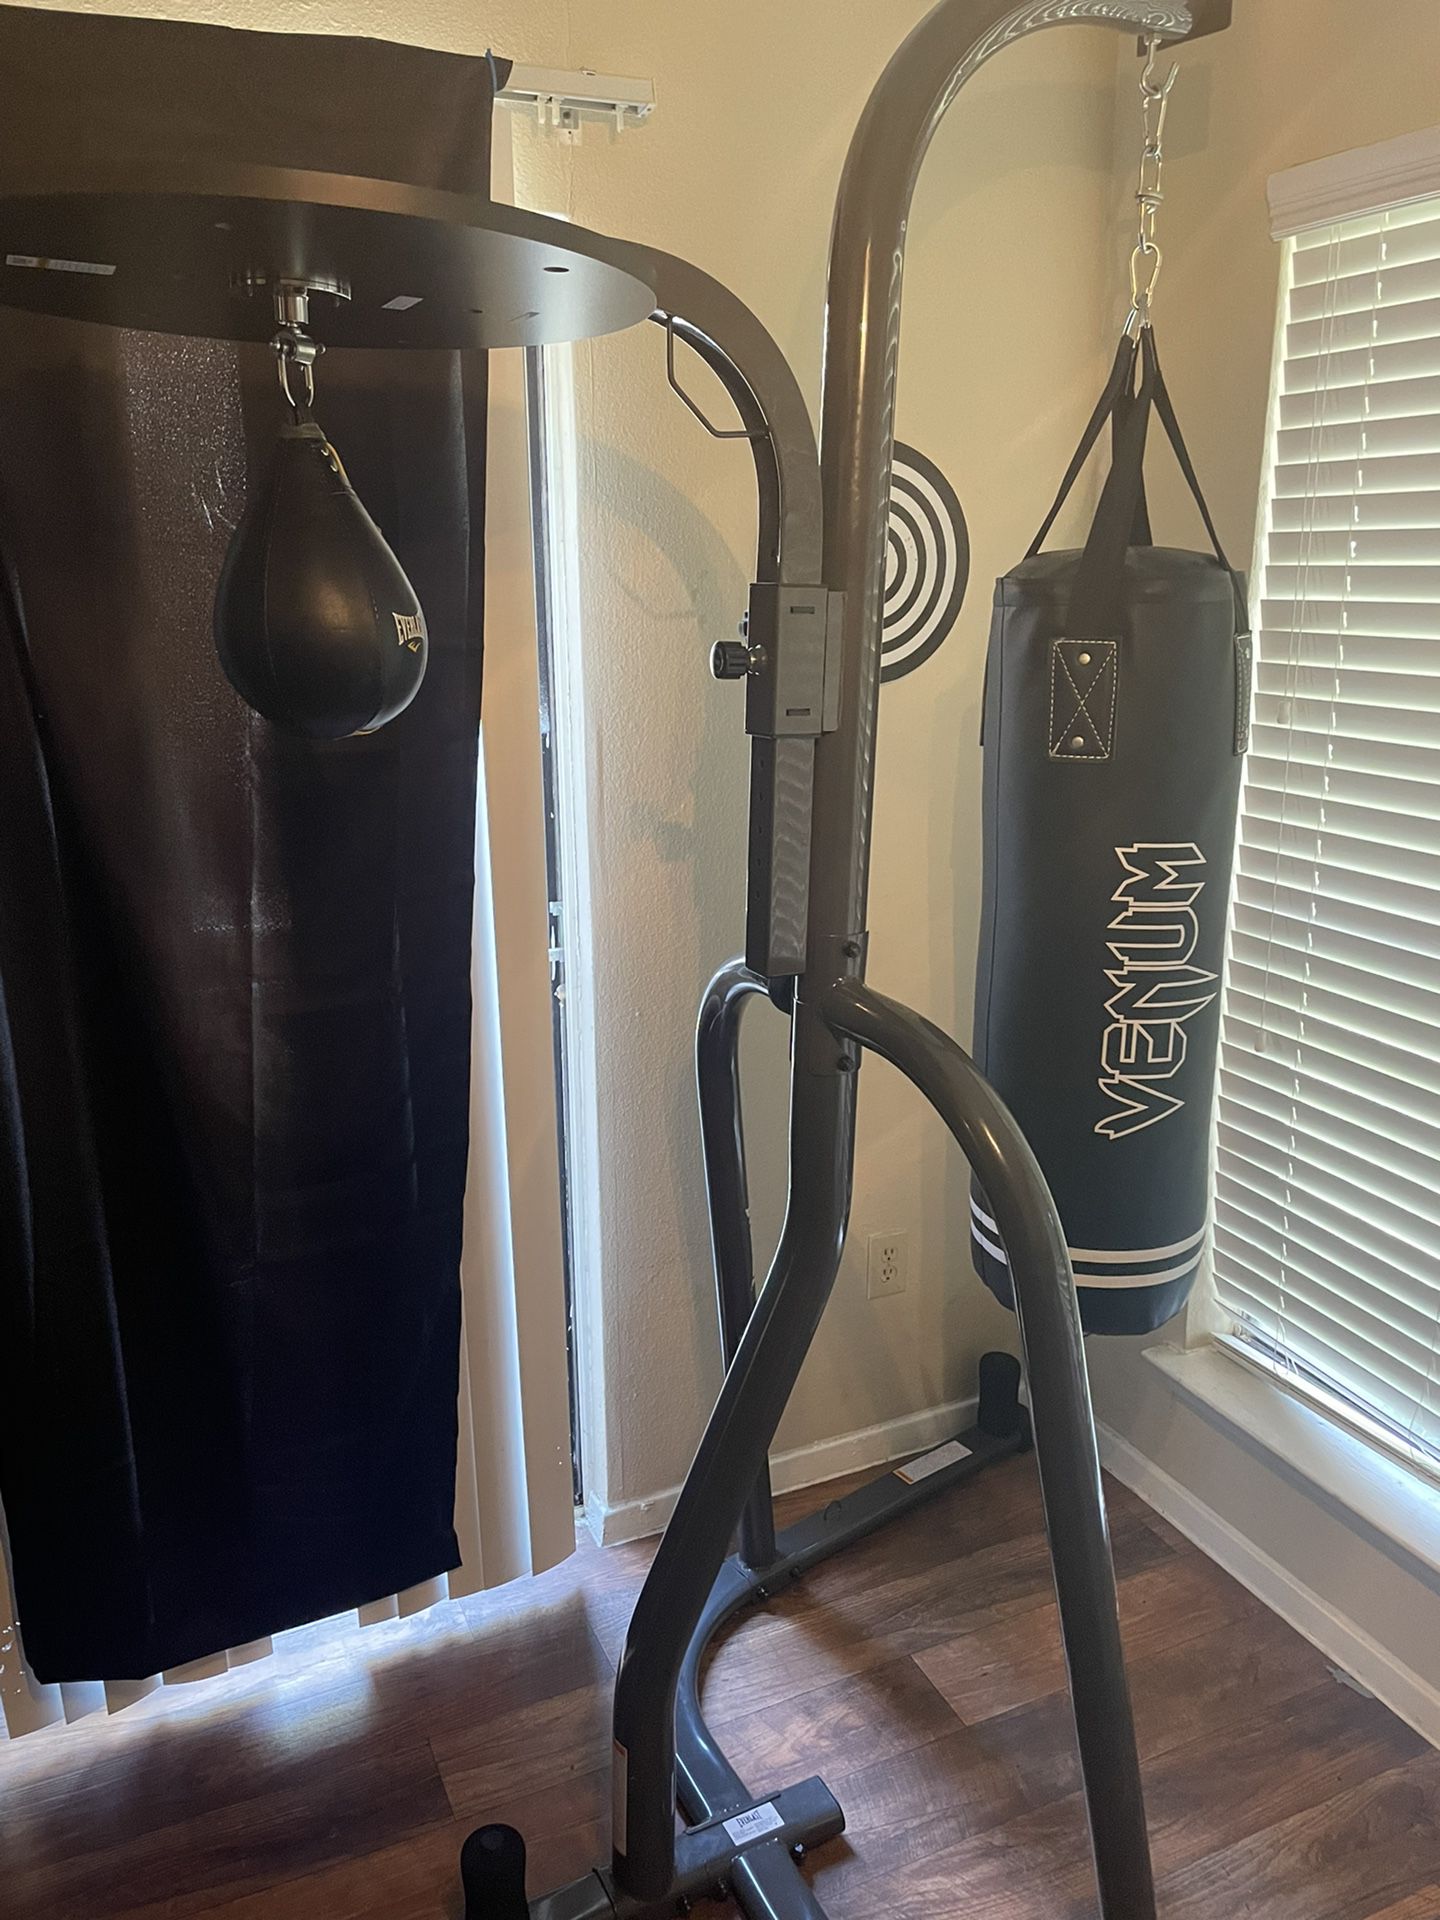 Boxing/trainining/gym